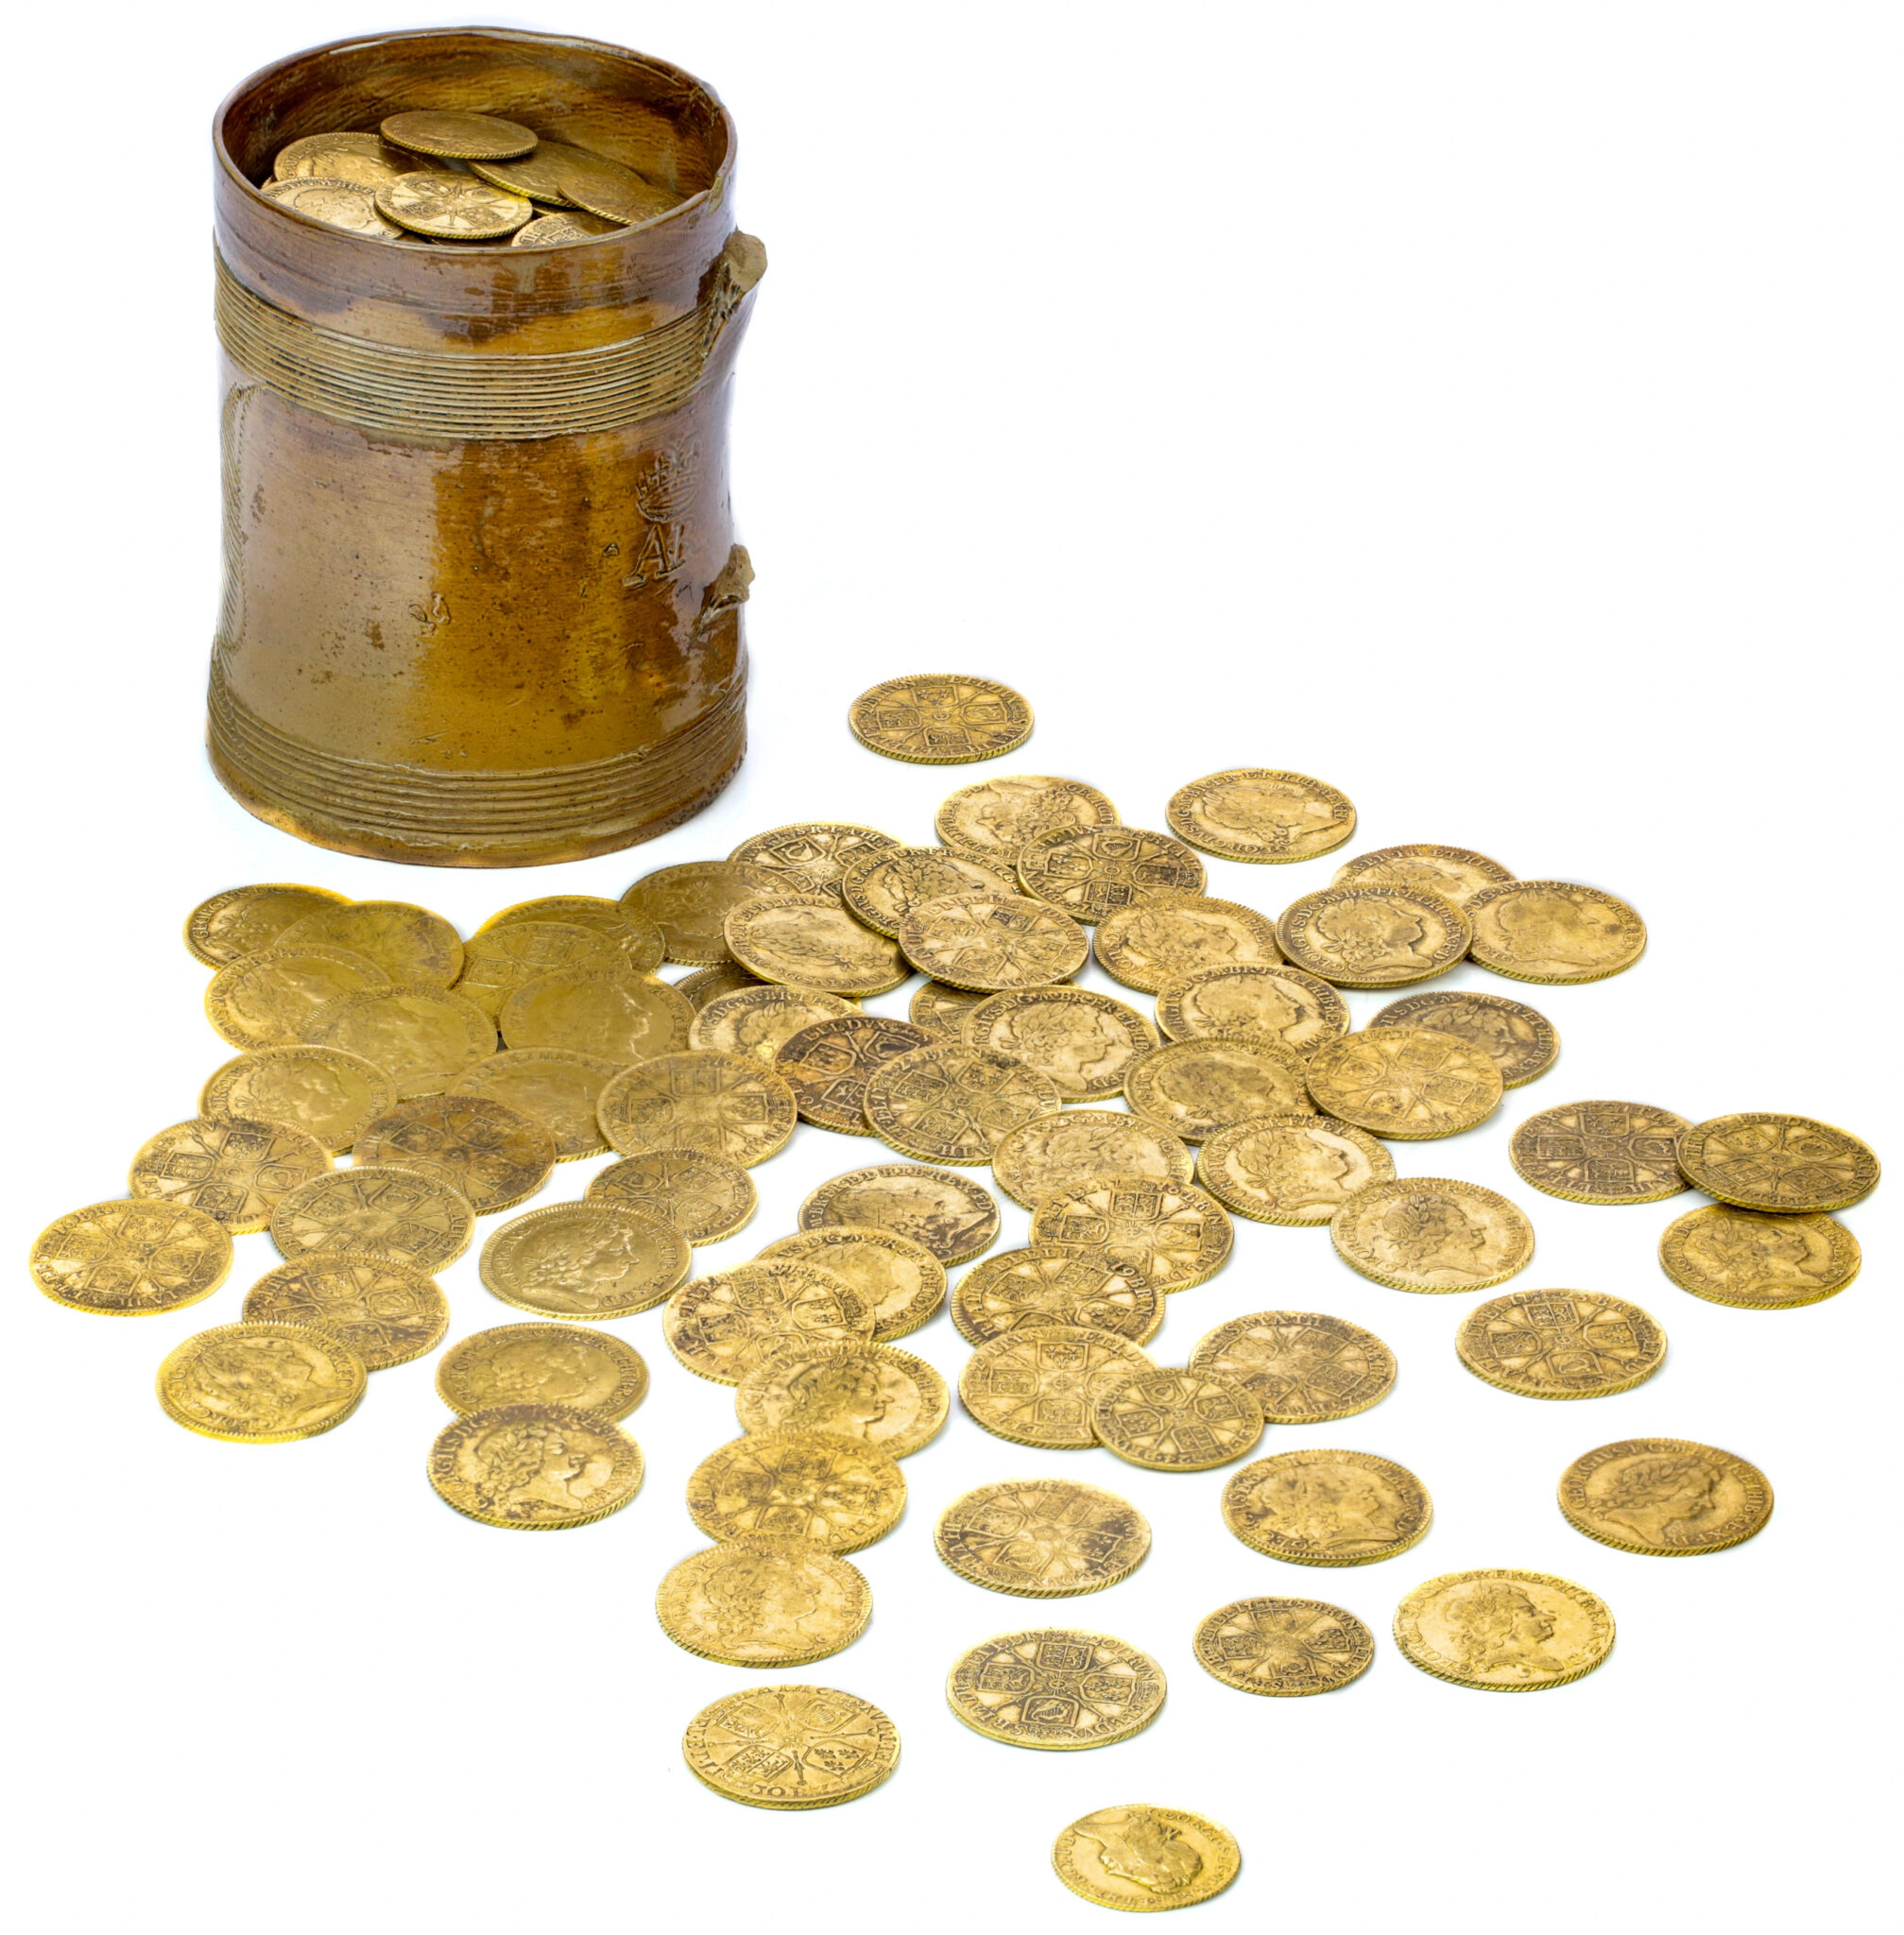 Gold coin hoard in a cup found under kitchen floor